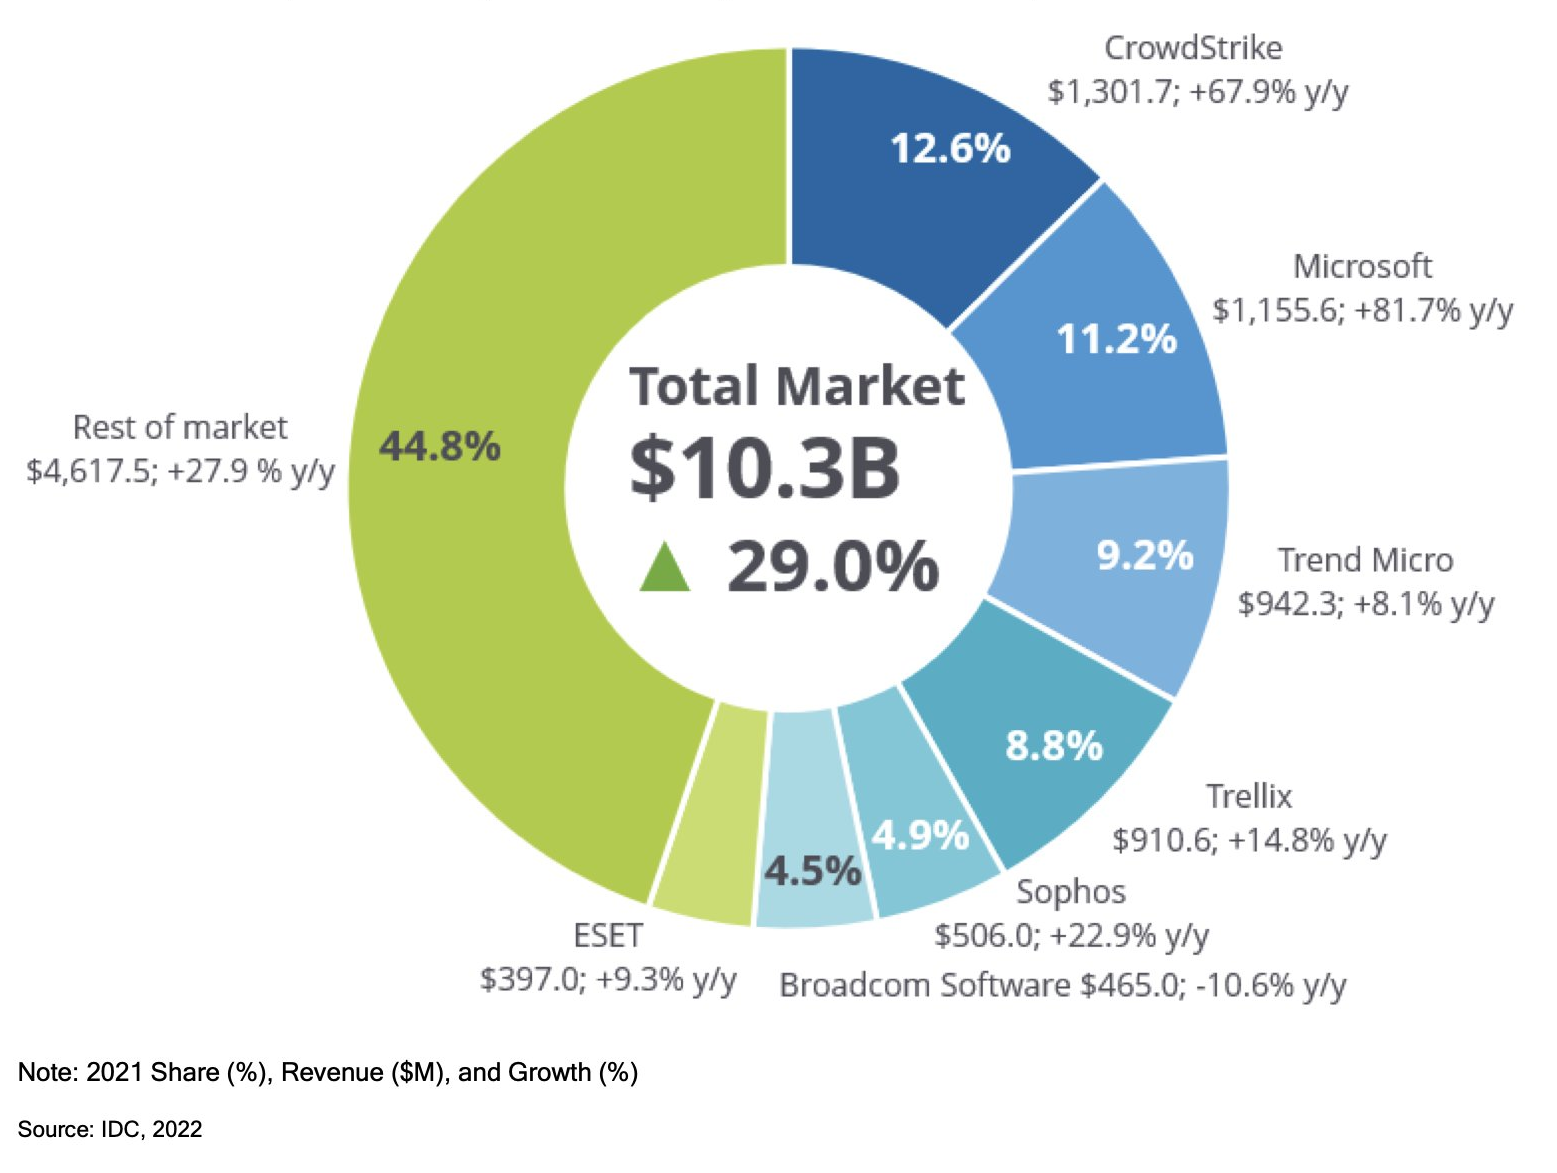 crowdstrike market share